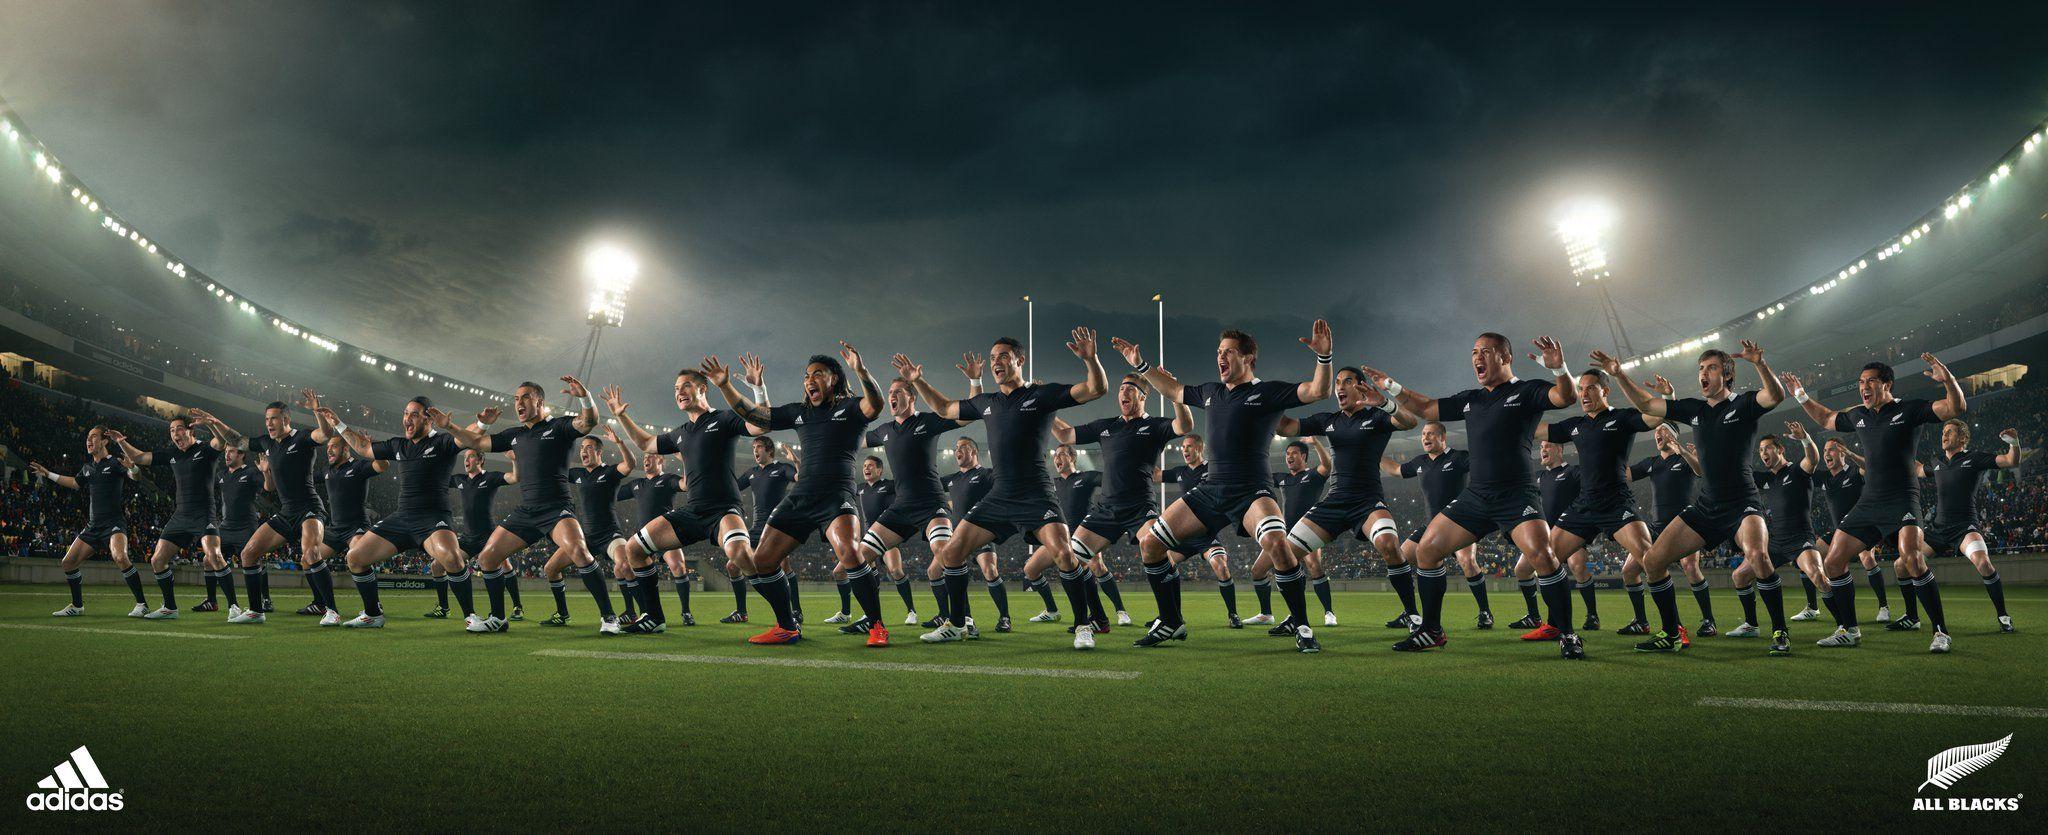 New Zealand All Blacks Haka. Rugby Blacks. Rugby